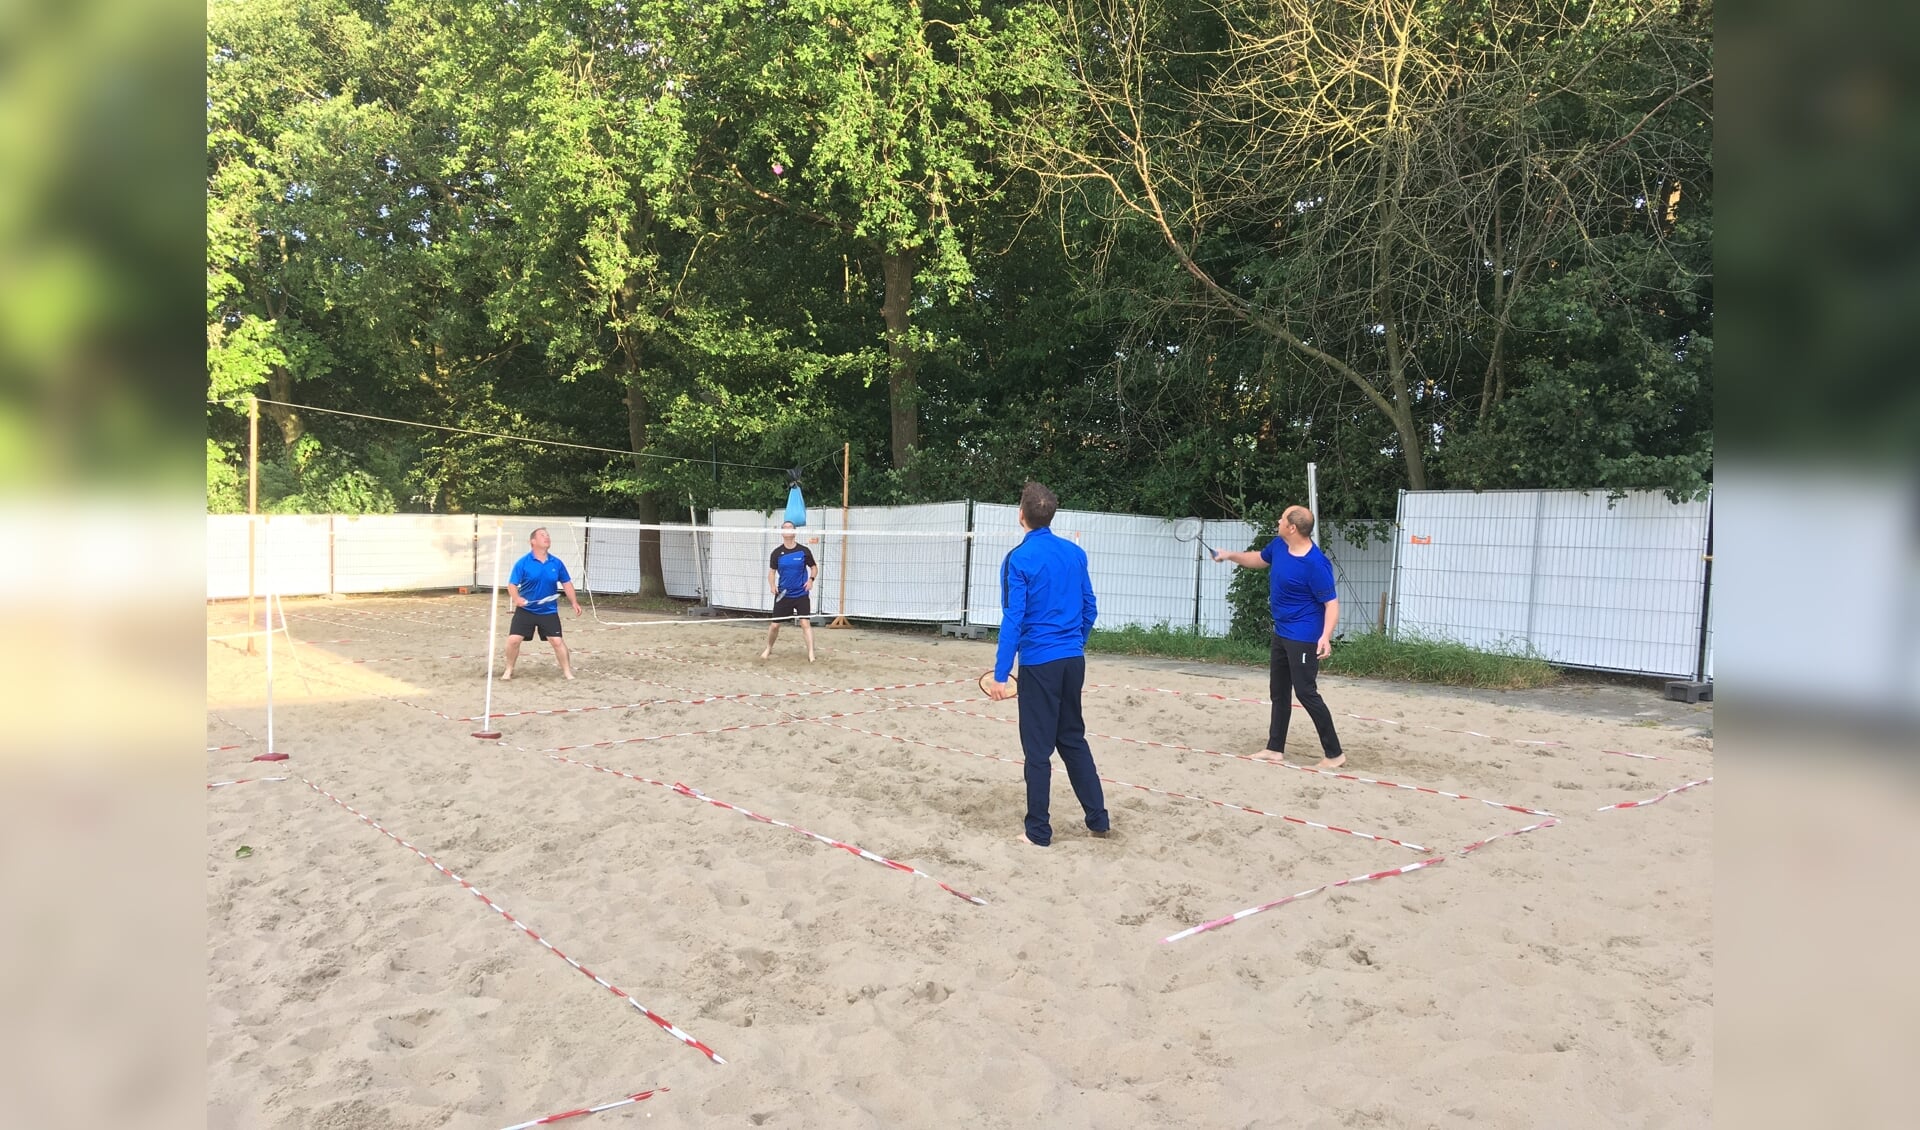 Air-badmintonnen op het zand